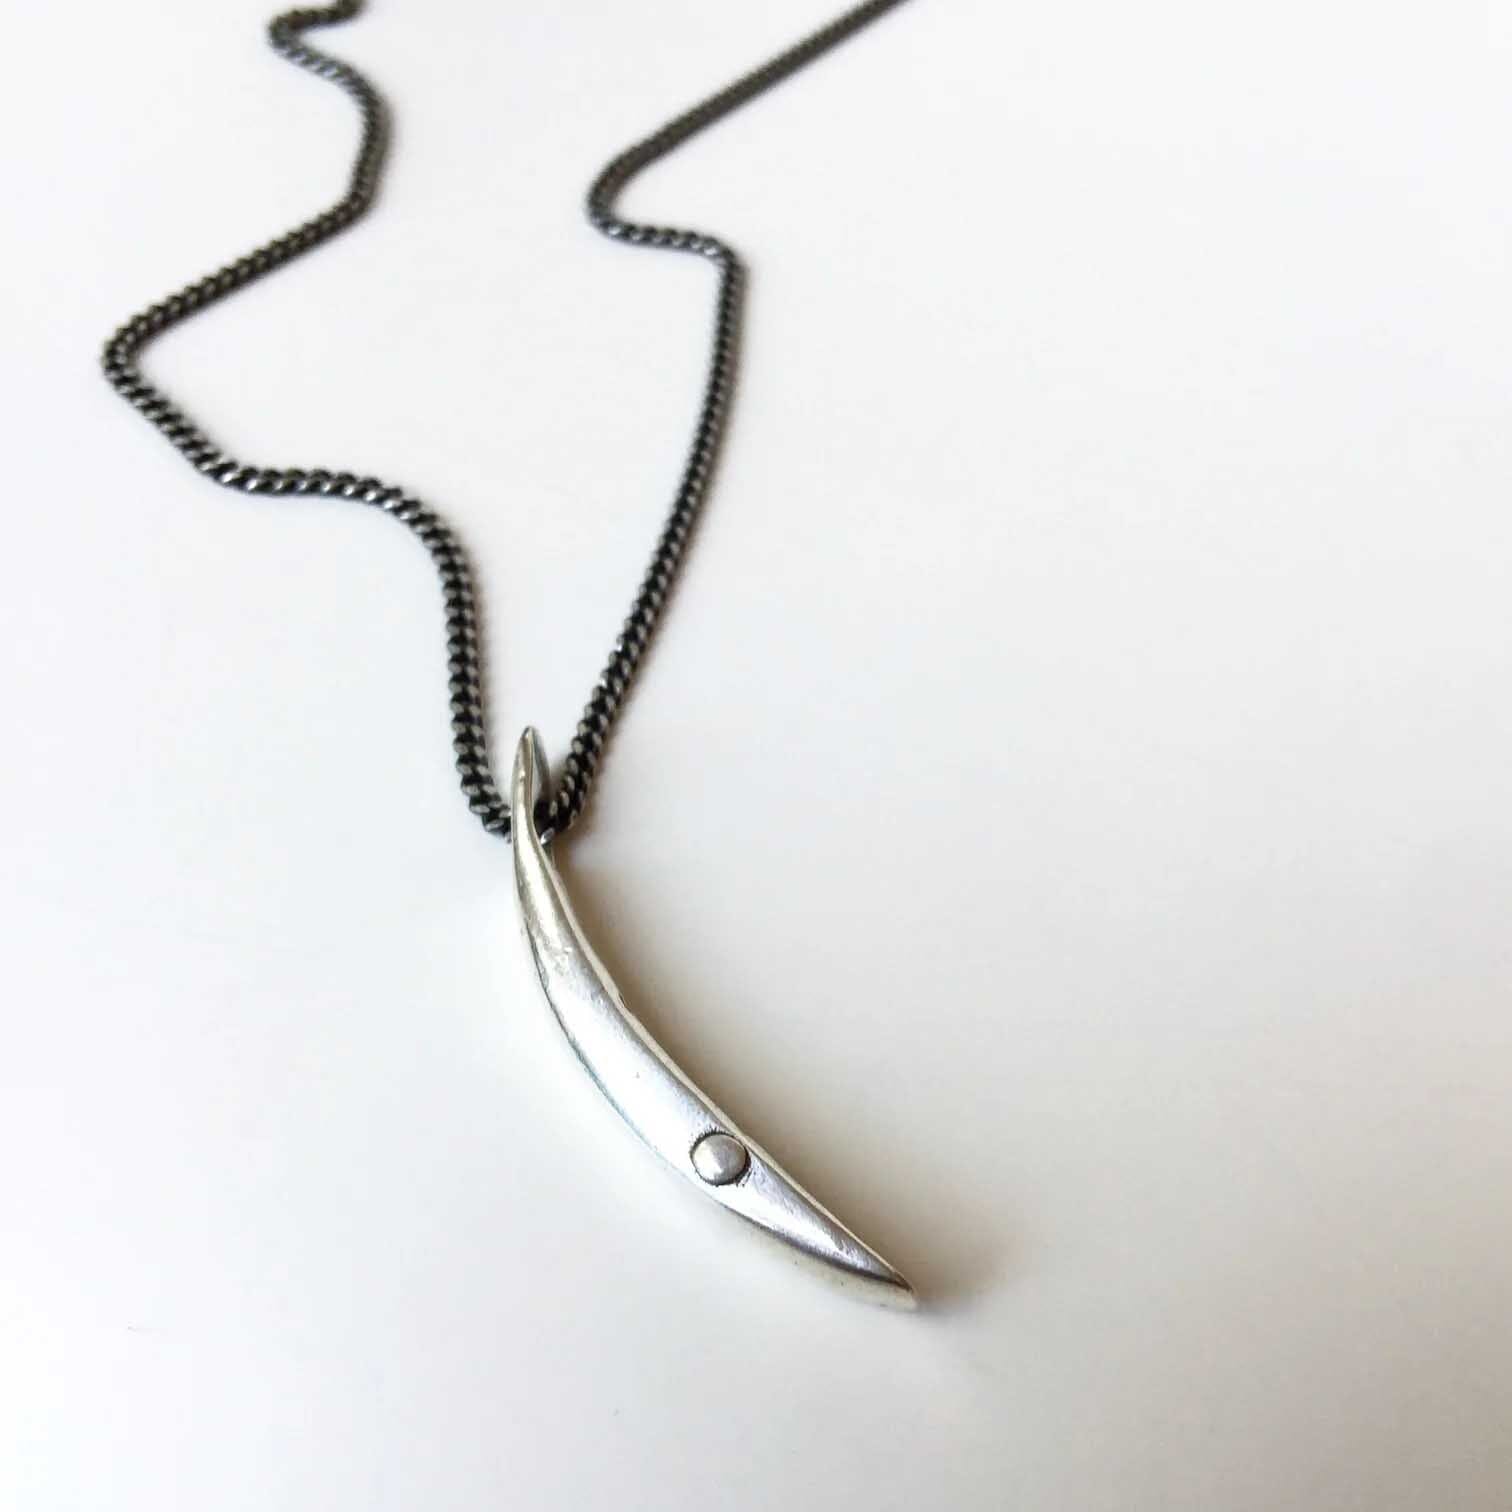 Sliver of a Crescent Moon "Love" Necklace in silver rivet detalil